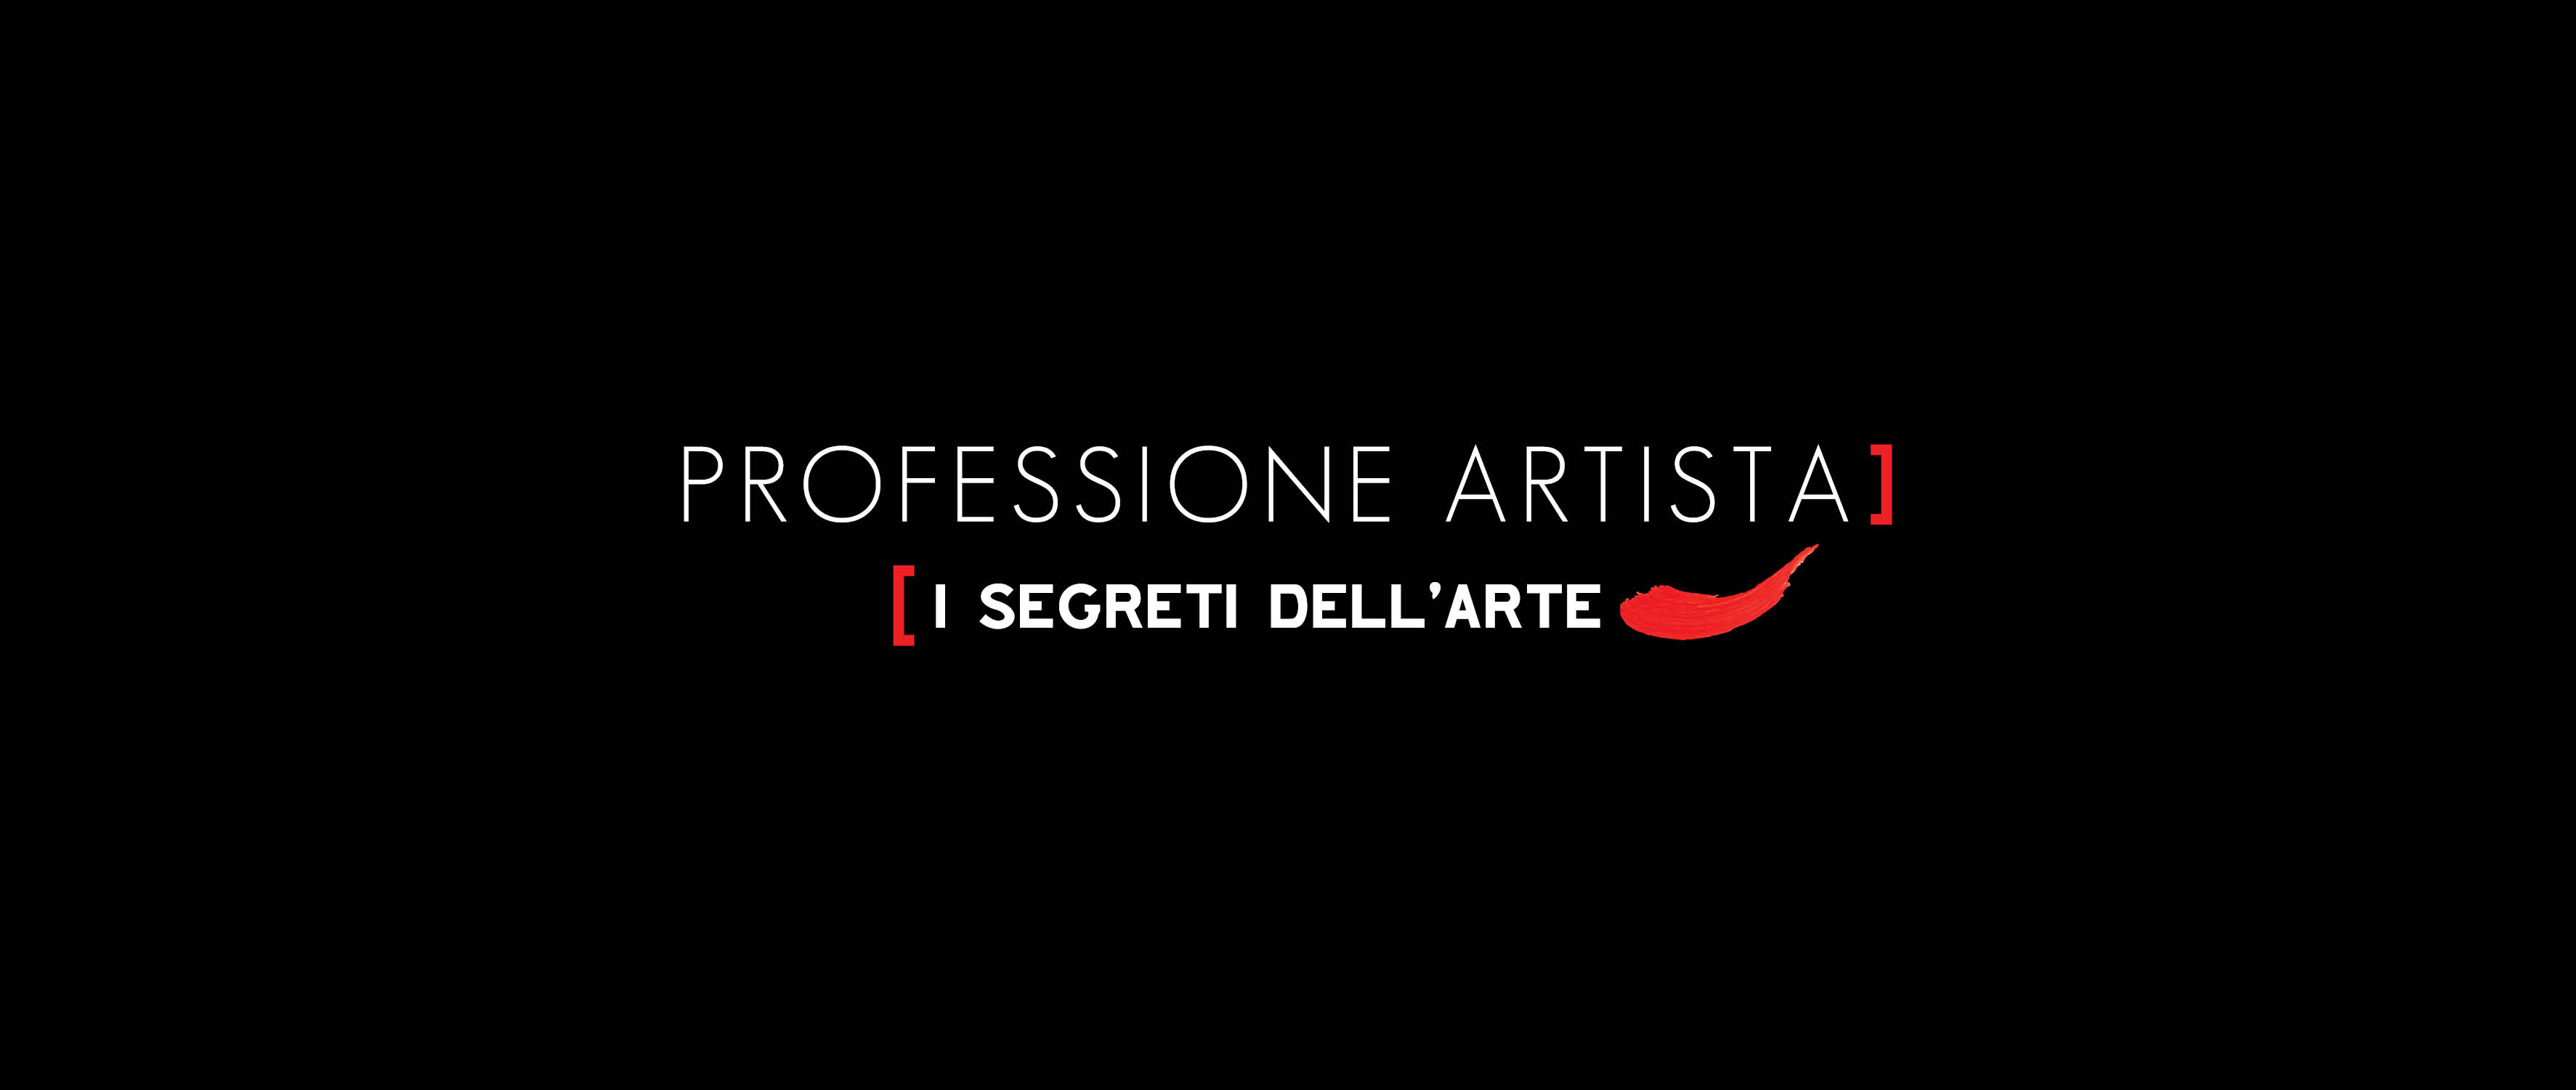 Premi, Concorsi e Residenze d’arte – ProfessioneArtista II 2019